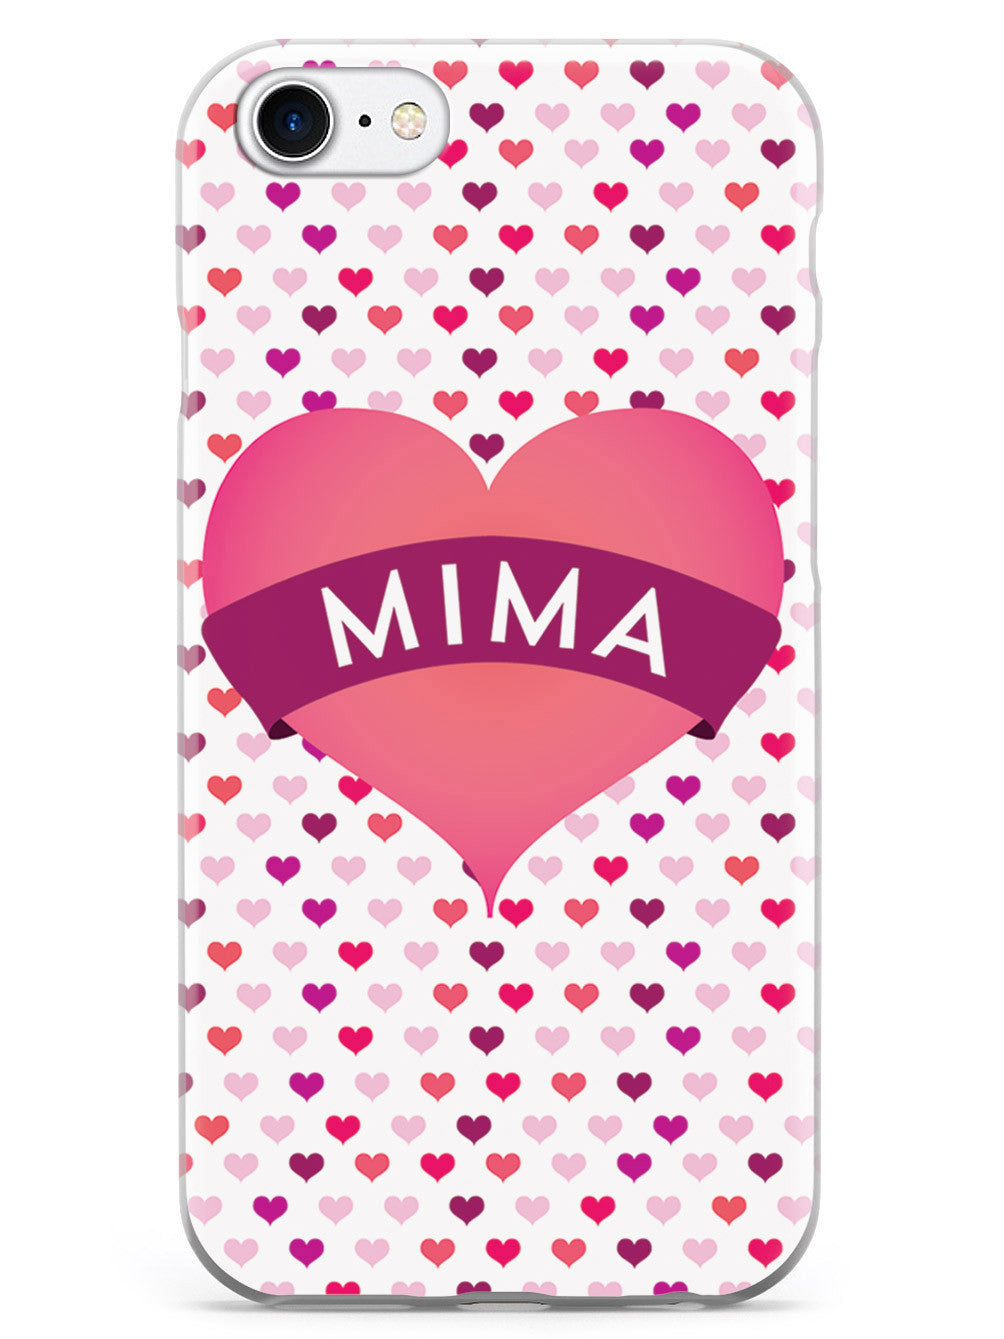 Mima Heart for Grandma Case